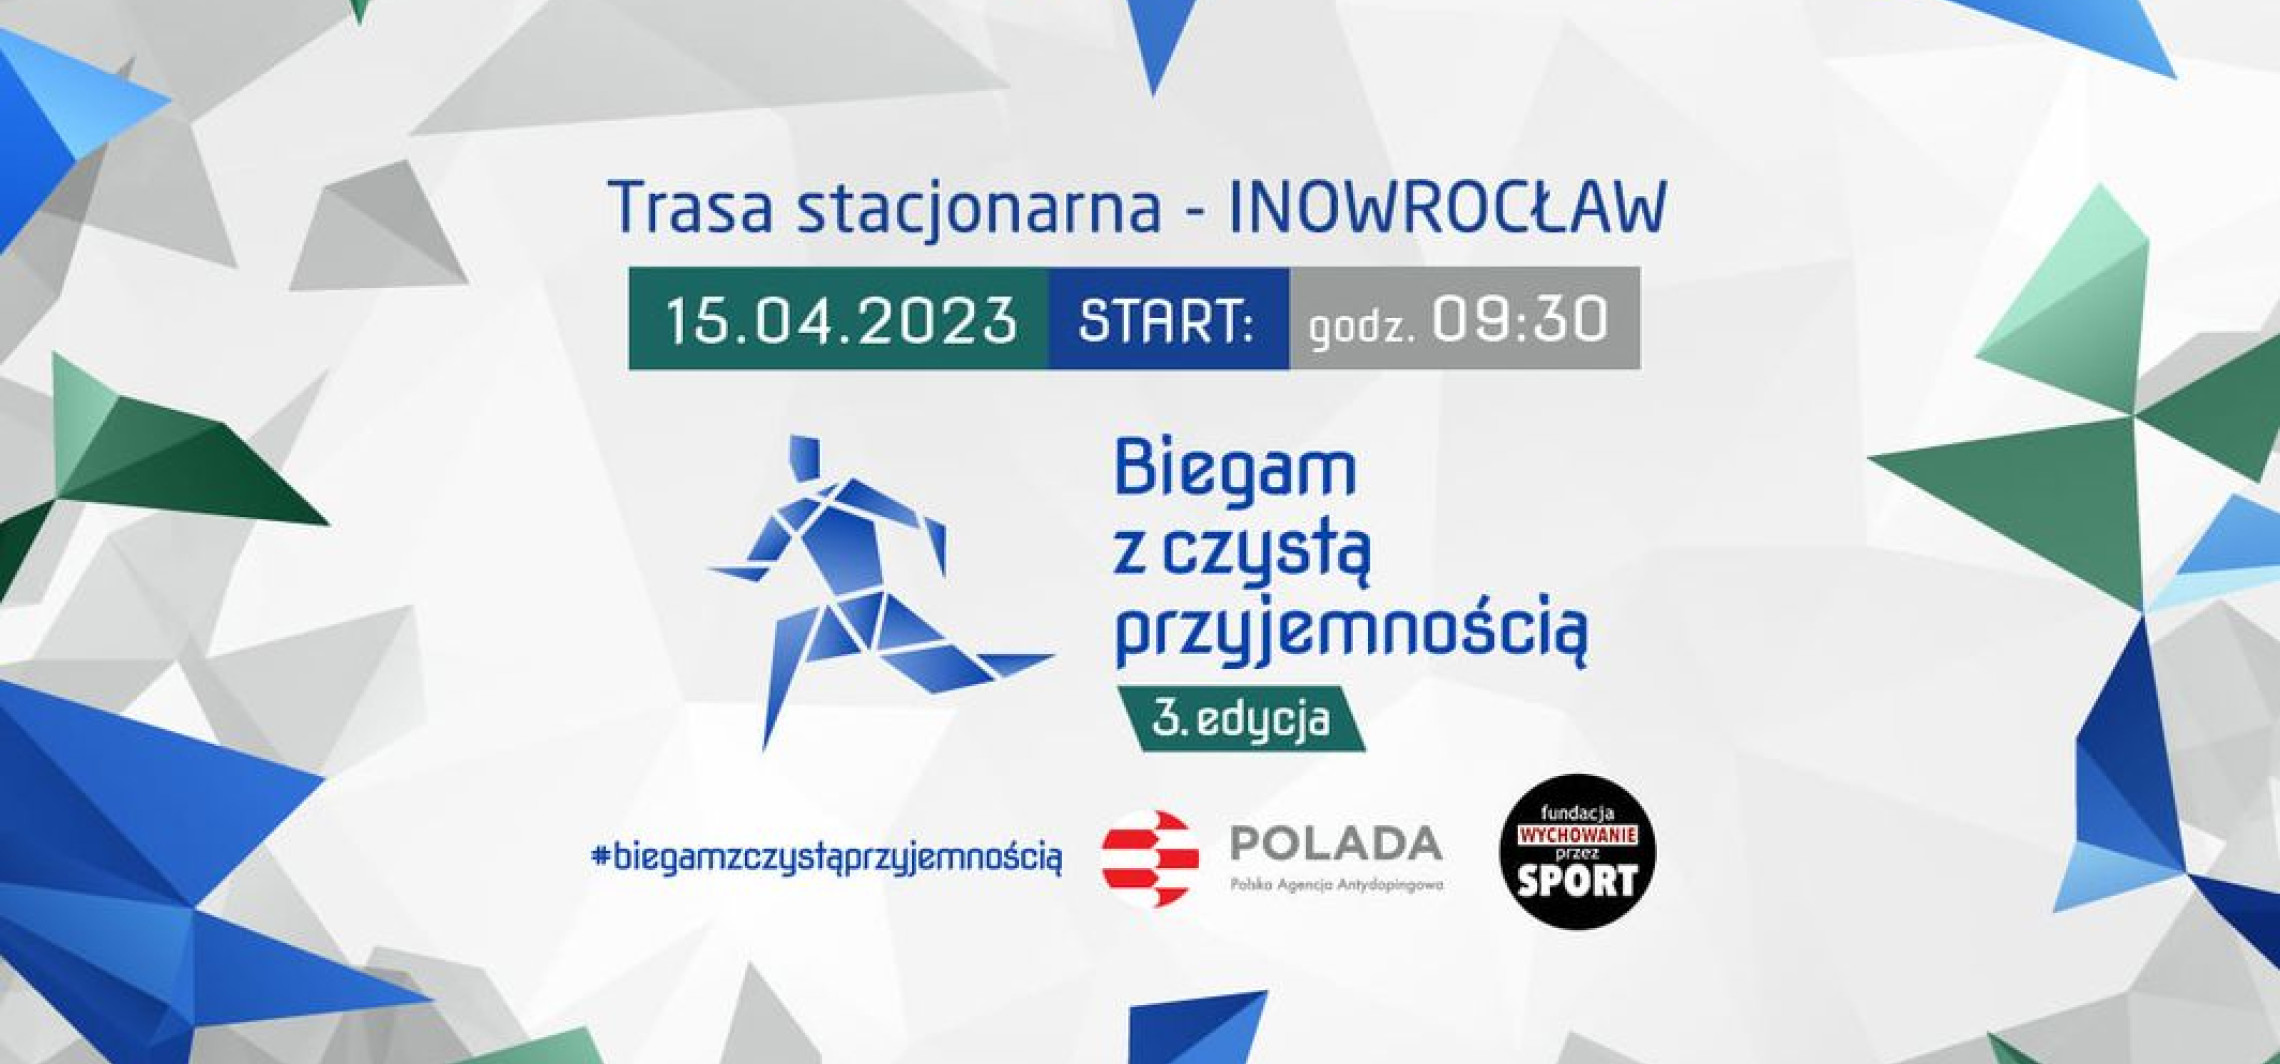 Inowrocław - Staną na starcie tego biegu, aby powiedzieć dopingowi: nie